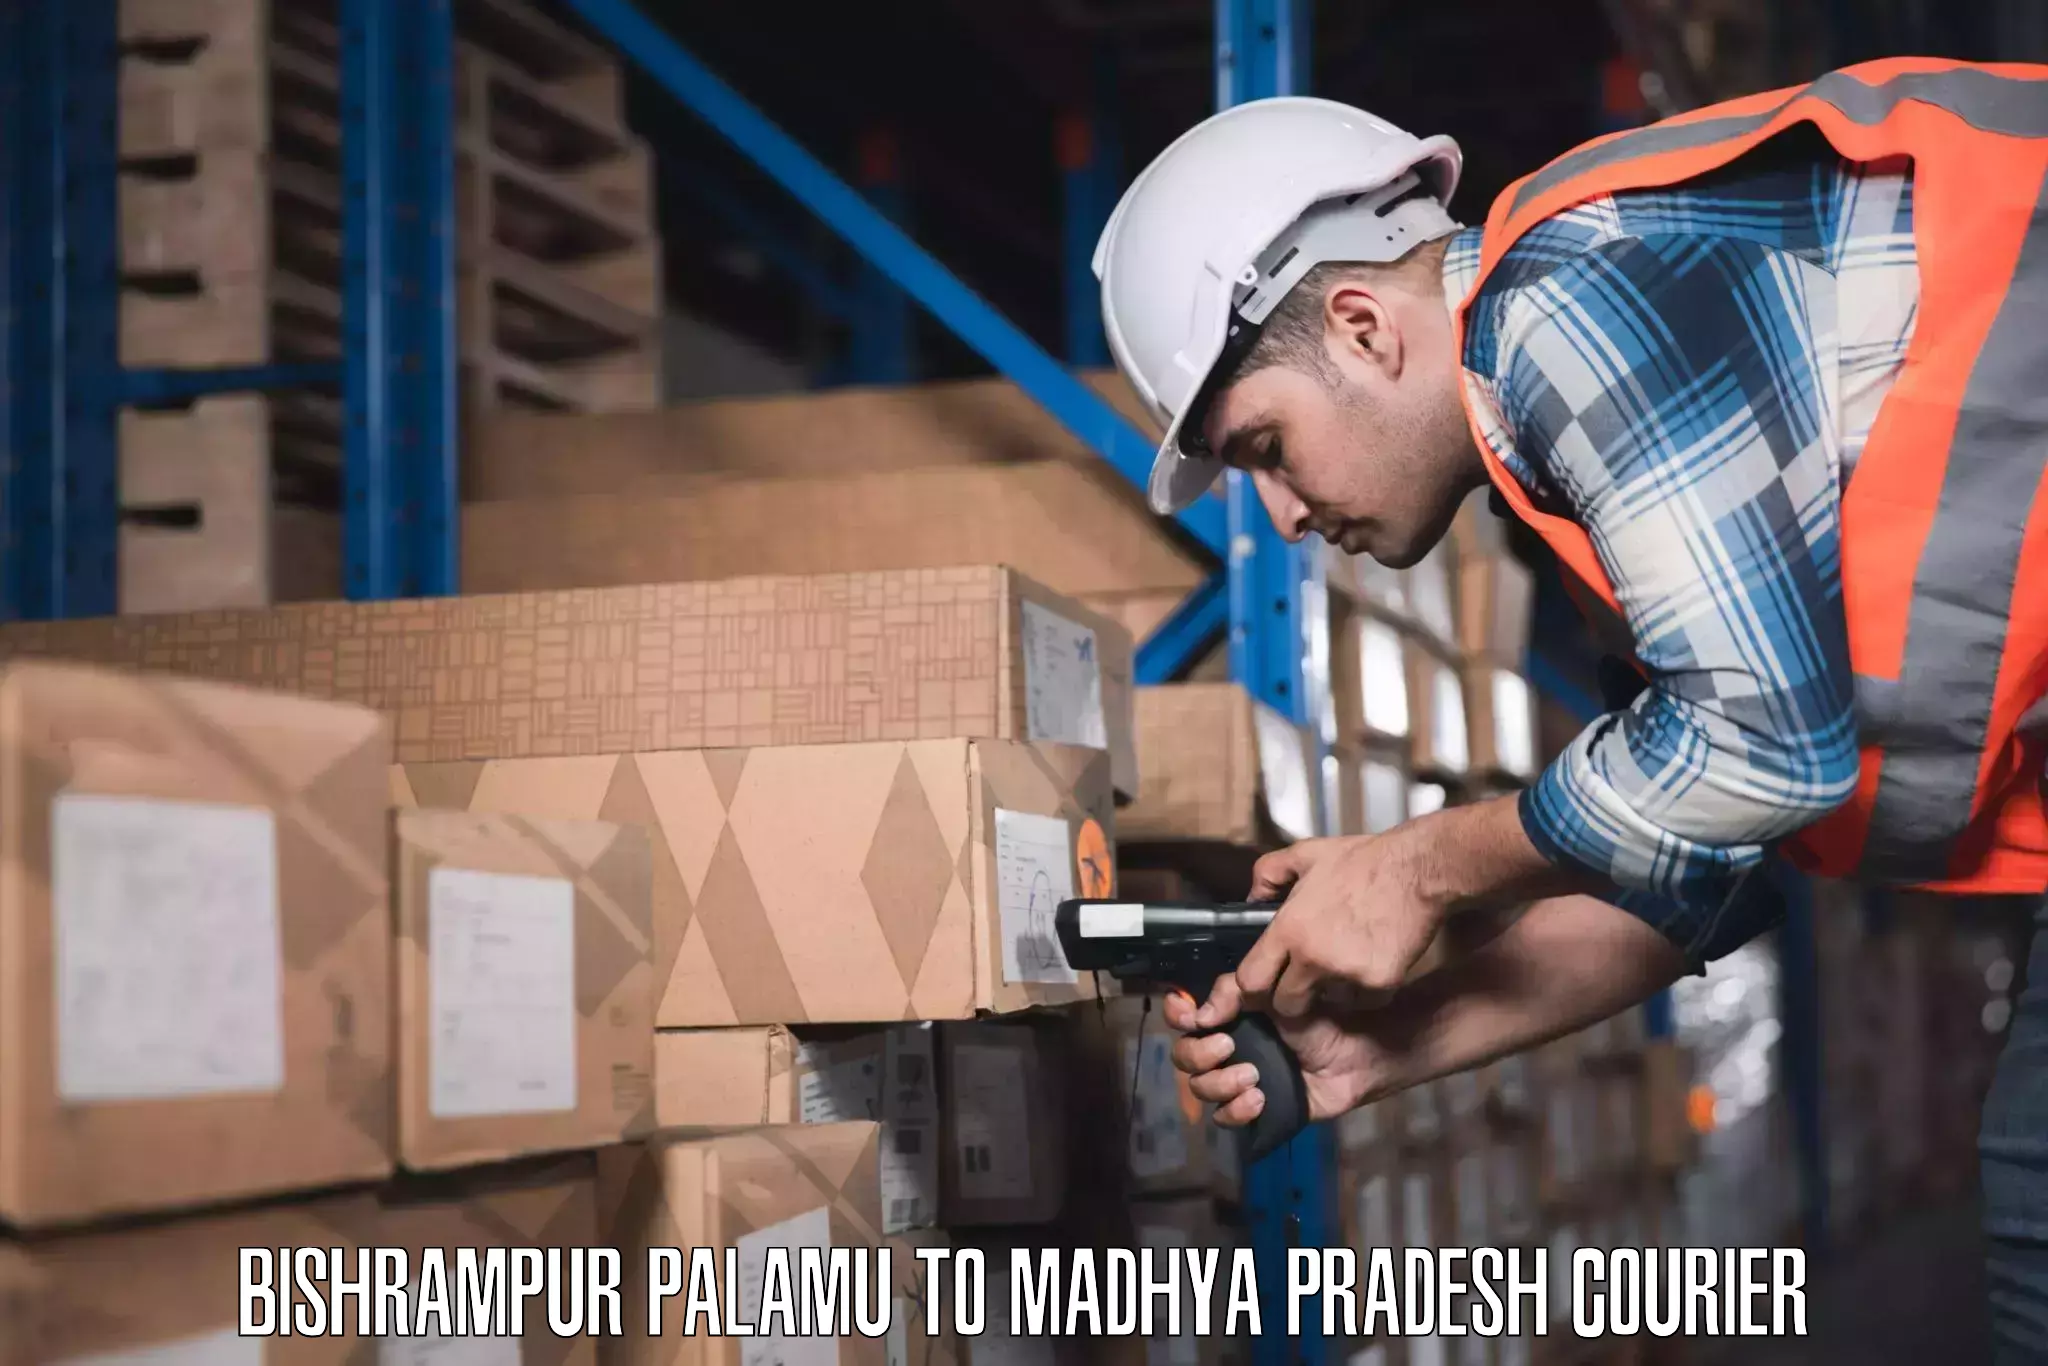 Luggage shipping planner Bishrampur Palamu to Begumganj